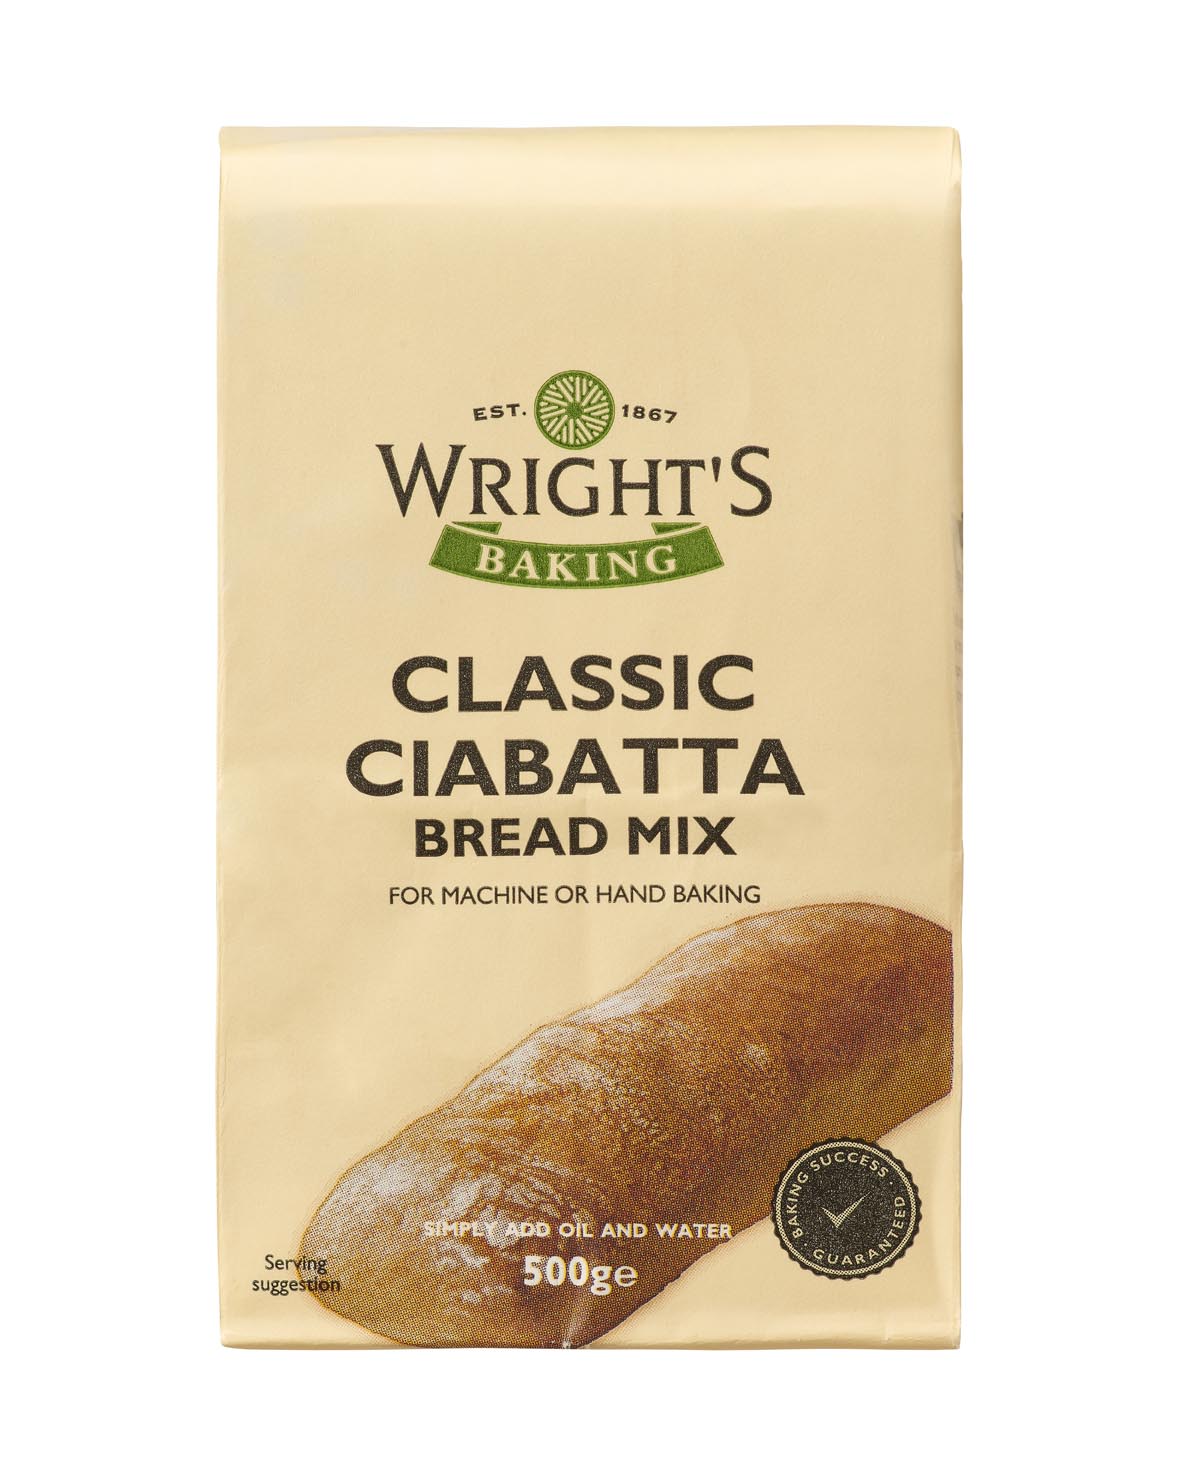 Classic Ciabatta Bread Mix 500g